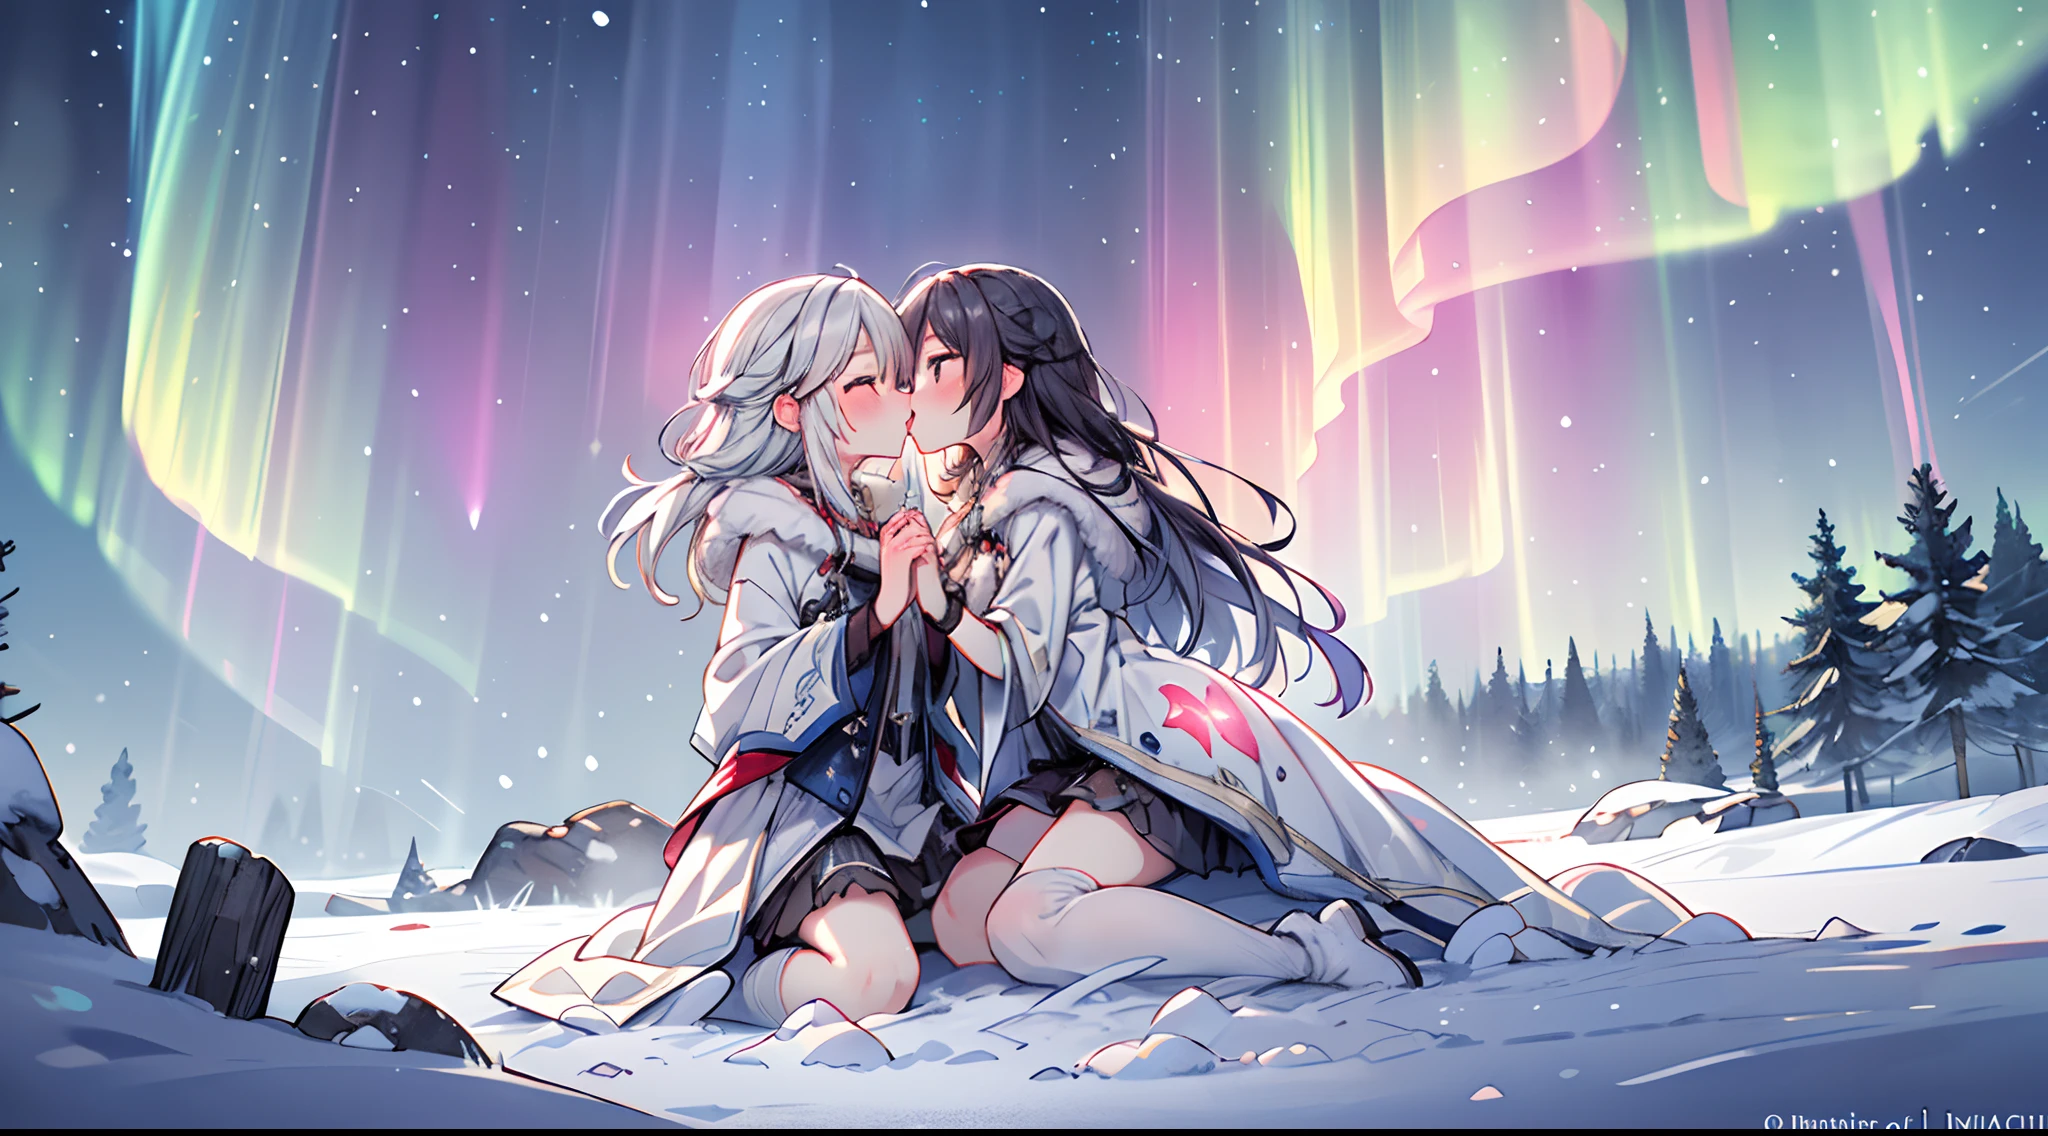 Sob o brilho mágico da aurora boreal, duas almas se abraçam num beijo na boca, as cores etéreas da aurora boreal lançando um feitiço sobrenatural, a paisagem coberta de neve aumentando o encanto, Renderização 3D, usando iluminação suave e texturas translúcidas para capturar a qualidade mística da cena